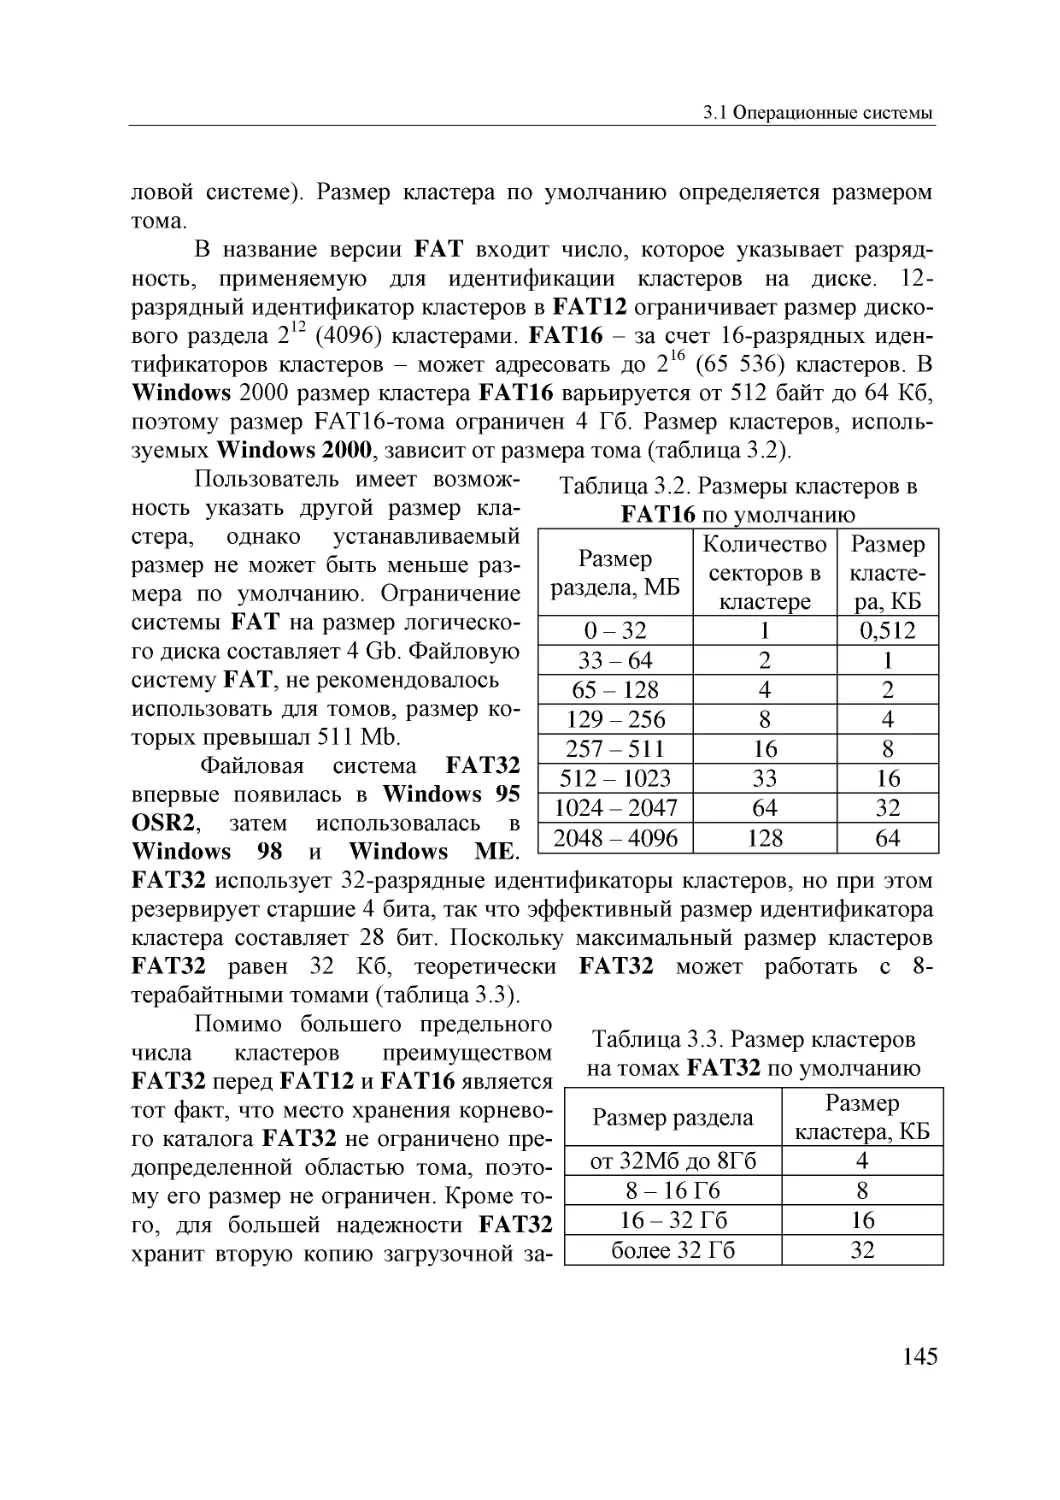 Informatika_Uchebnik_dlya_vuzov_2010 145